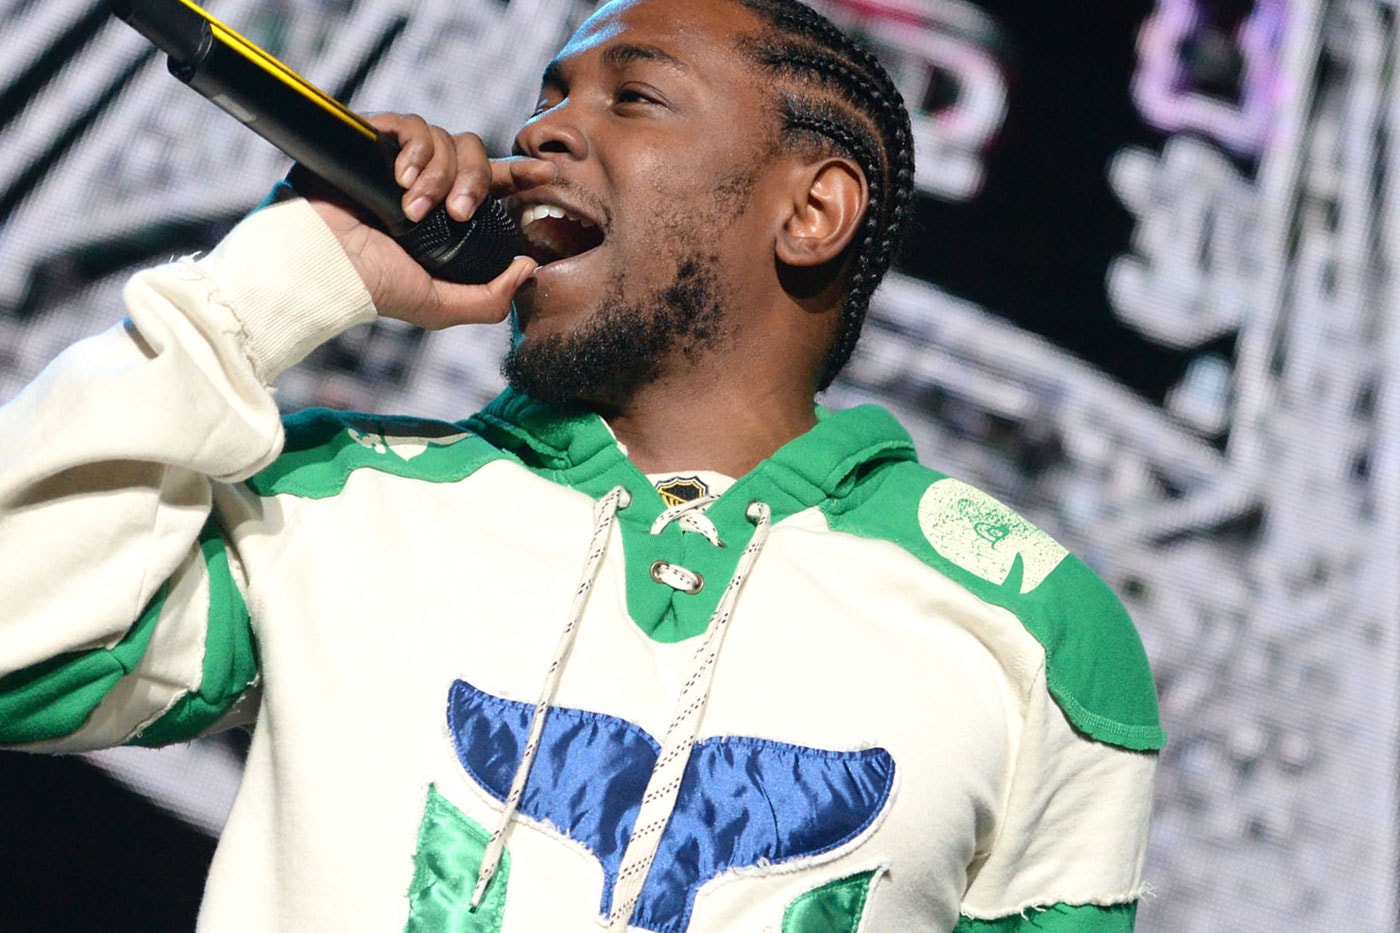 Mos Def (Yasiin Bey) & Kendrick Lamar Join Forces at Osheaga